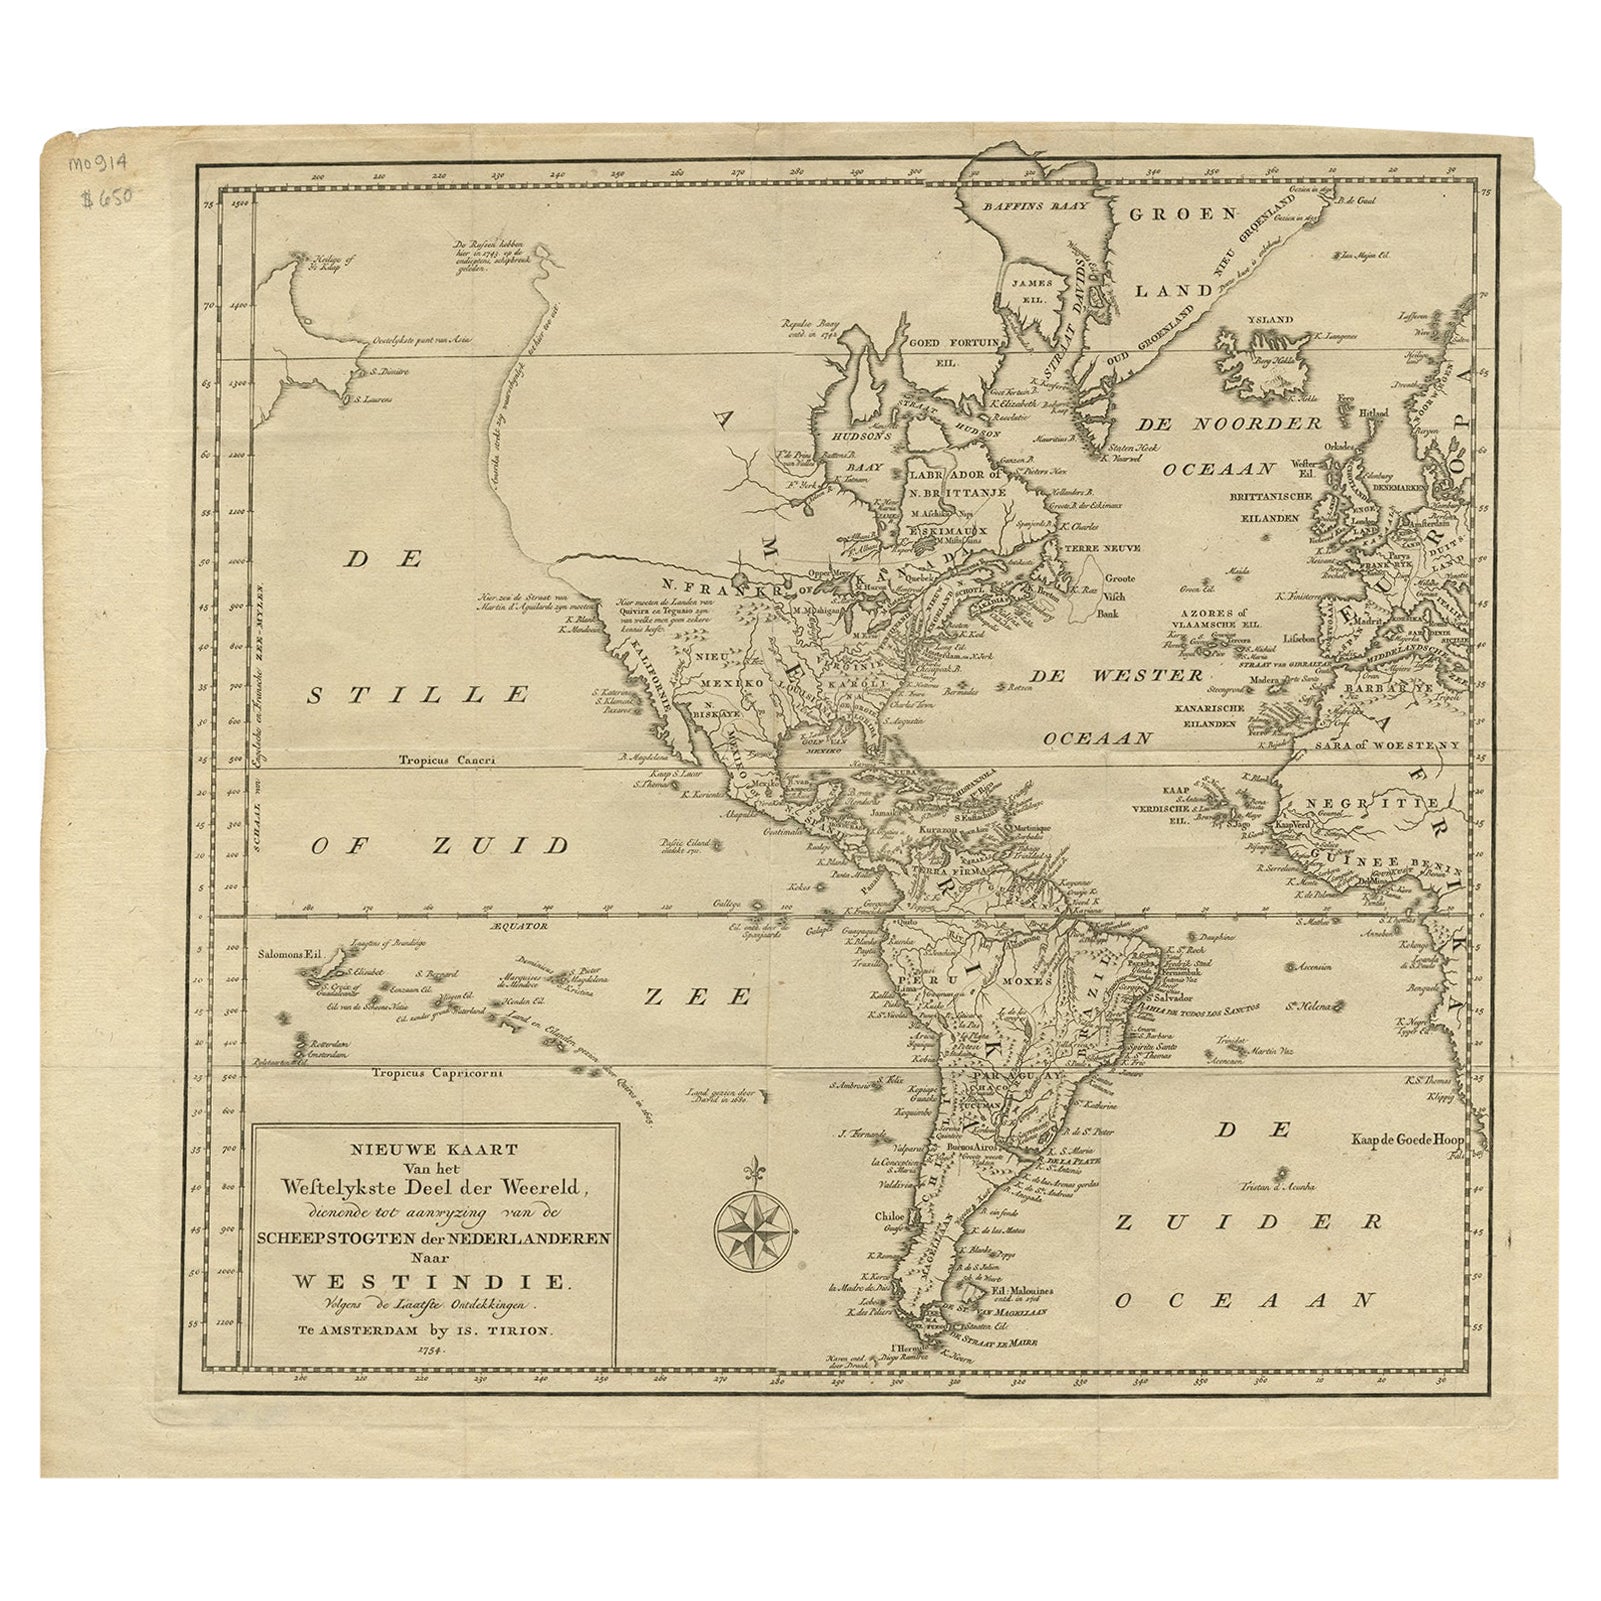 Excellente carte ancienne d'Amérique avec une inhabituelle côte nord-ouest de l'Amérique, vers 1754